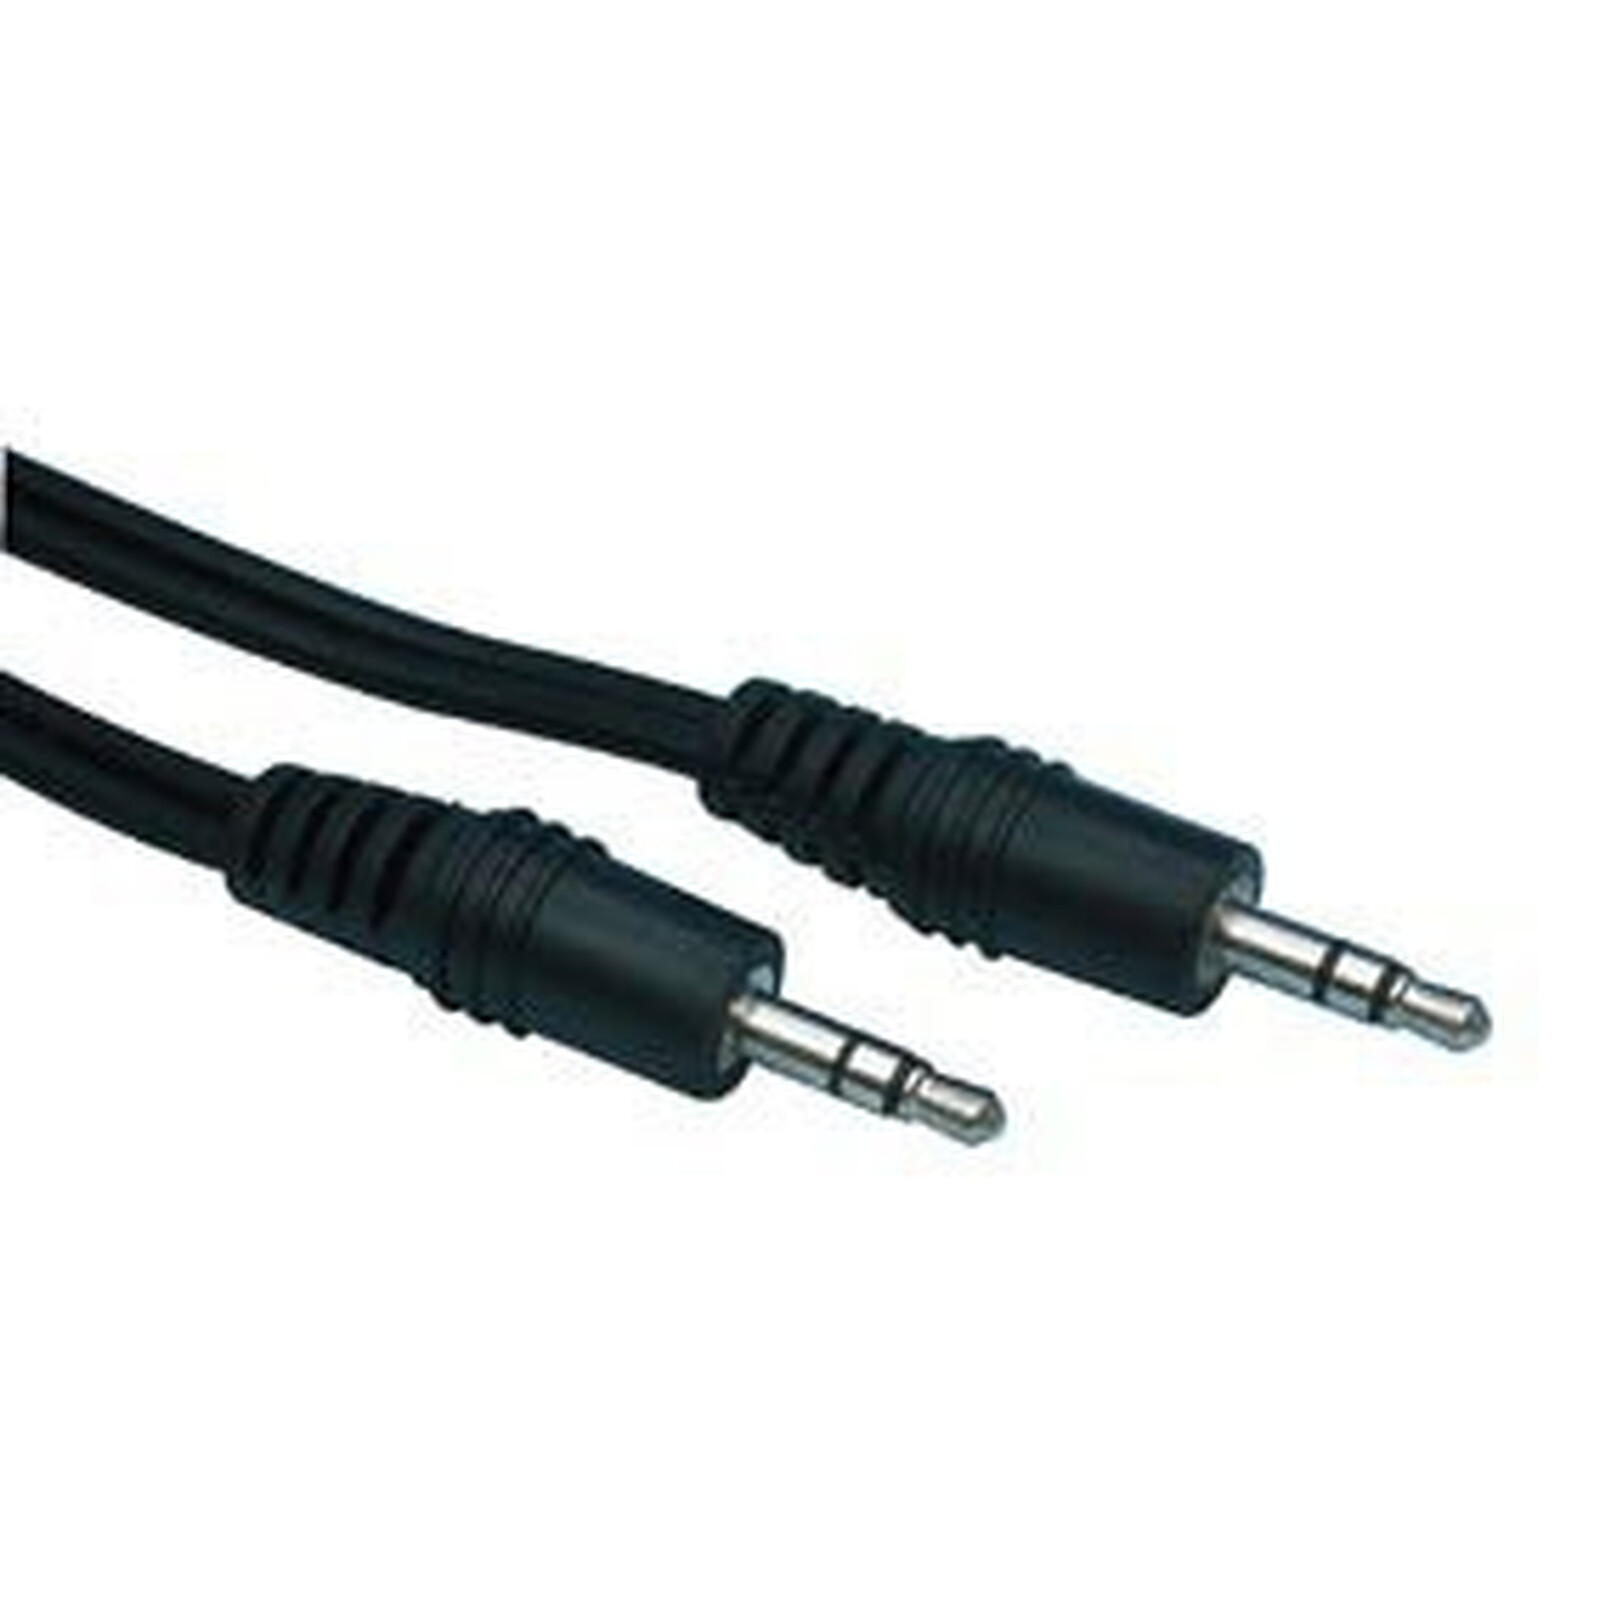 Câble audio Jack 3.5 mm stéréo mâle/mâle (2.5 mètres) - Câble